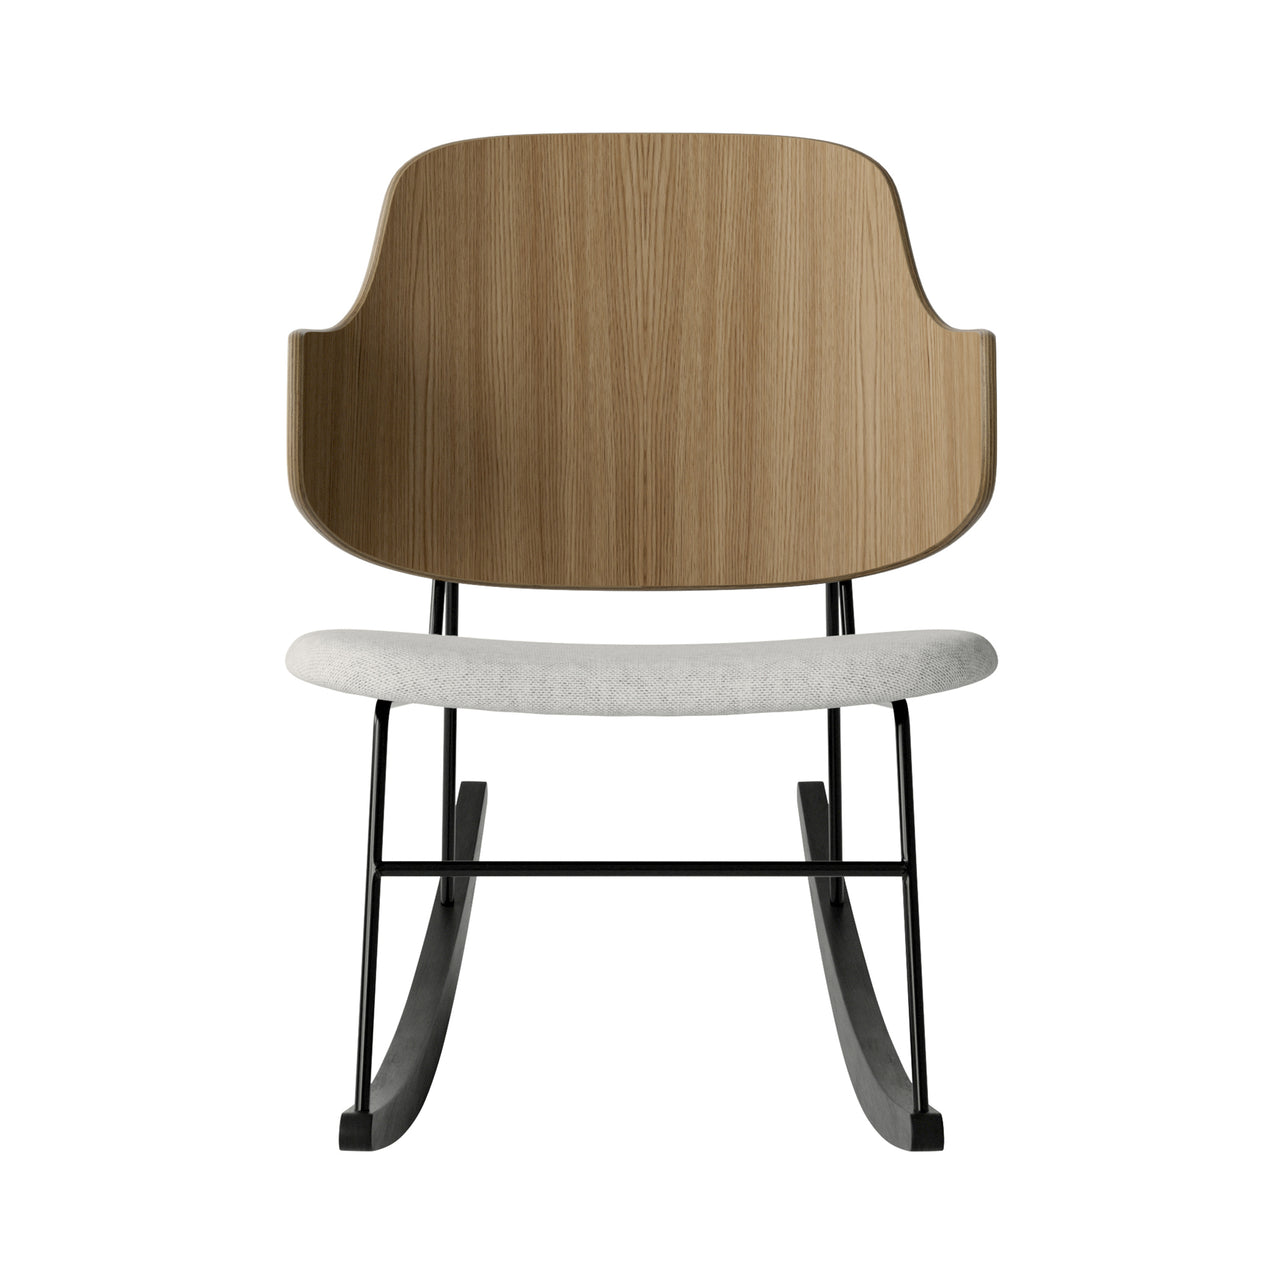 The Penguin Rocking Chair: Upholstered + Natural Oak + Hallingdal 65 110